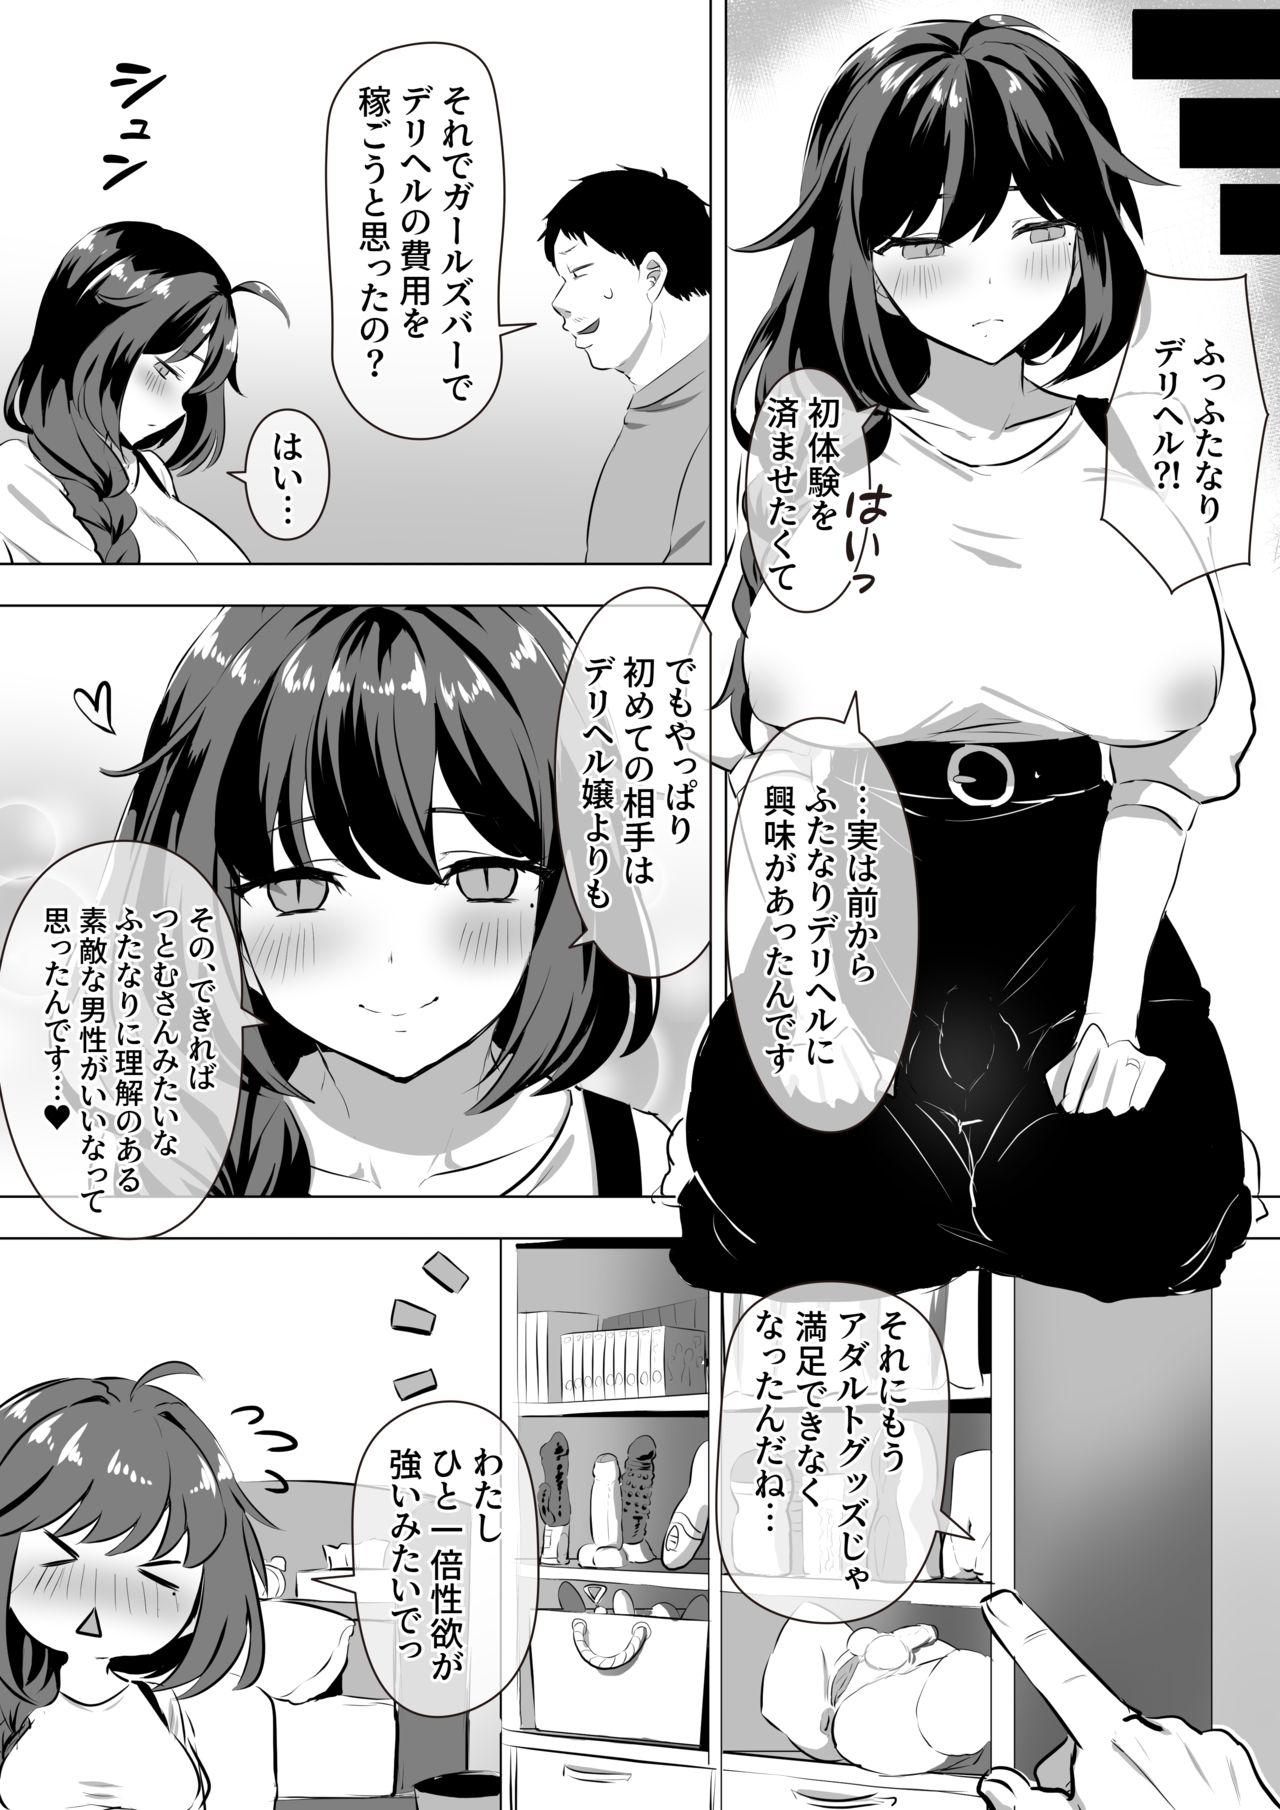 4some Futanari Iyashikei Bakunyū Hōkei Babu mi JD Manga - Original Fake - Page 3